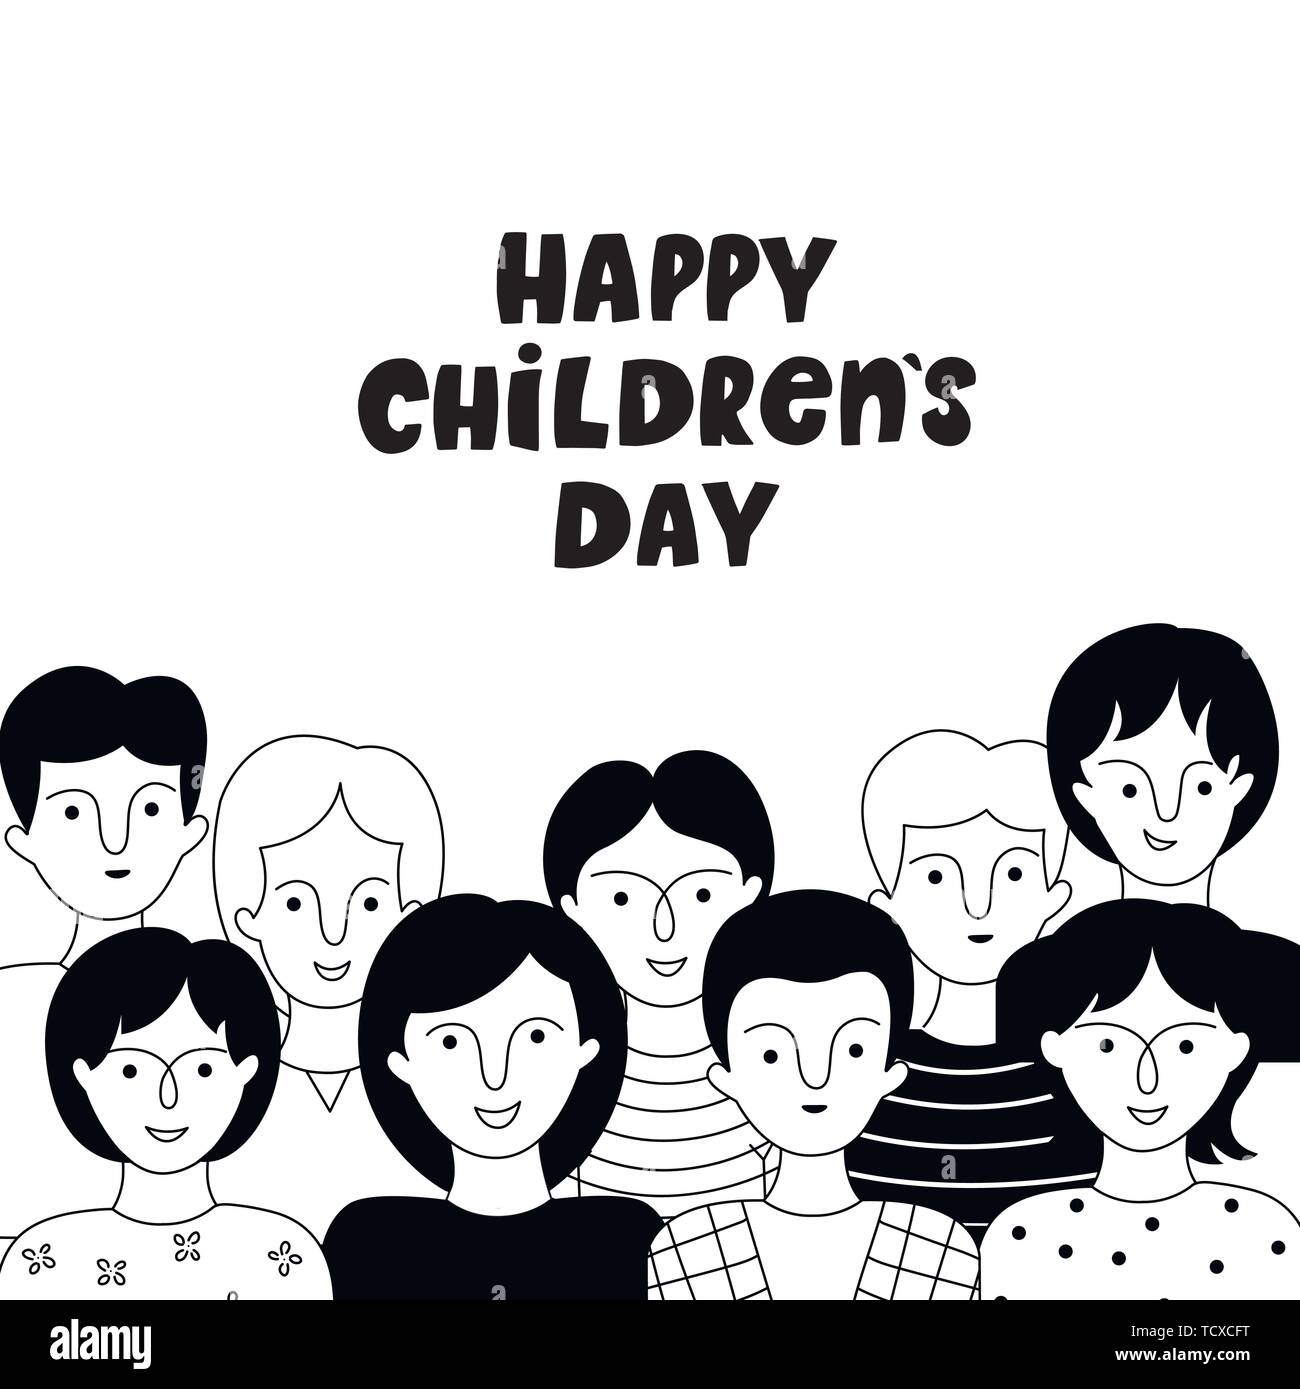 Happy Children's Day Poster mit Jungen und Mädchen. Vektor handgezeichnete Illustrationen. Doodle Stil. Stock Vektor